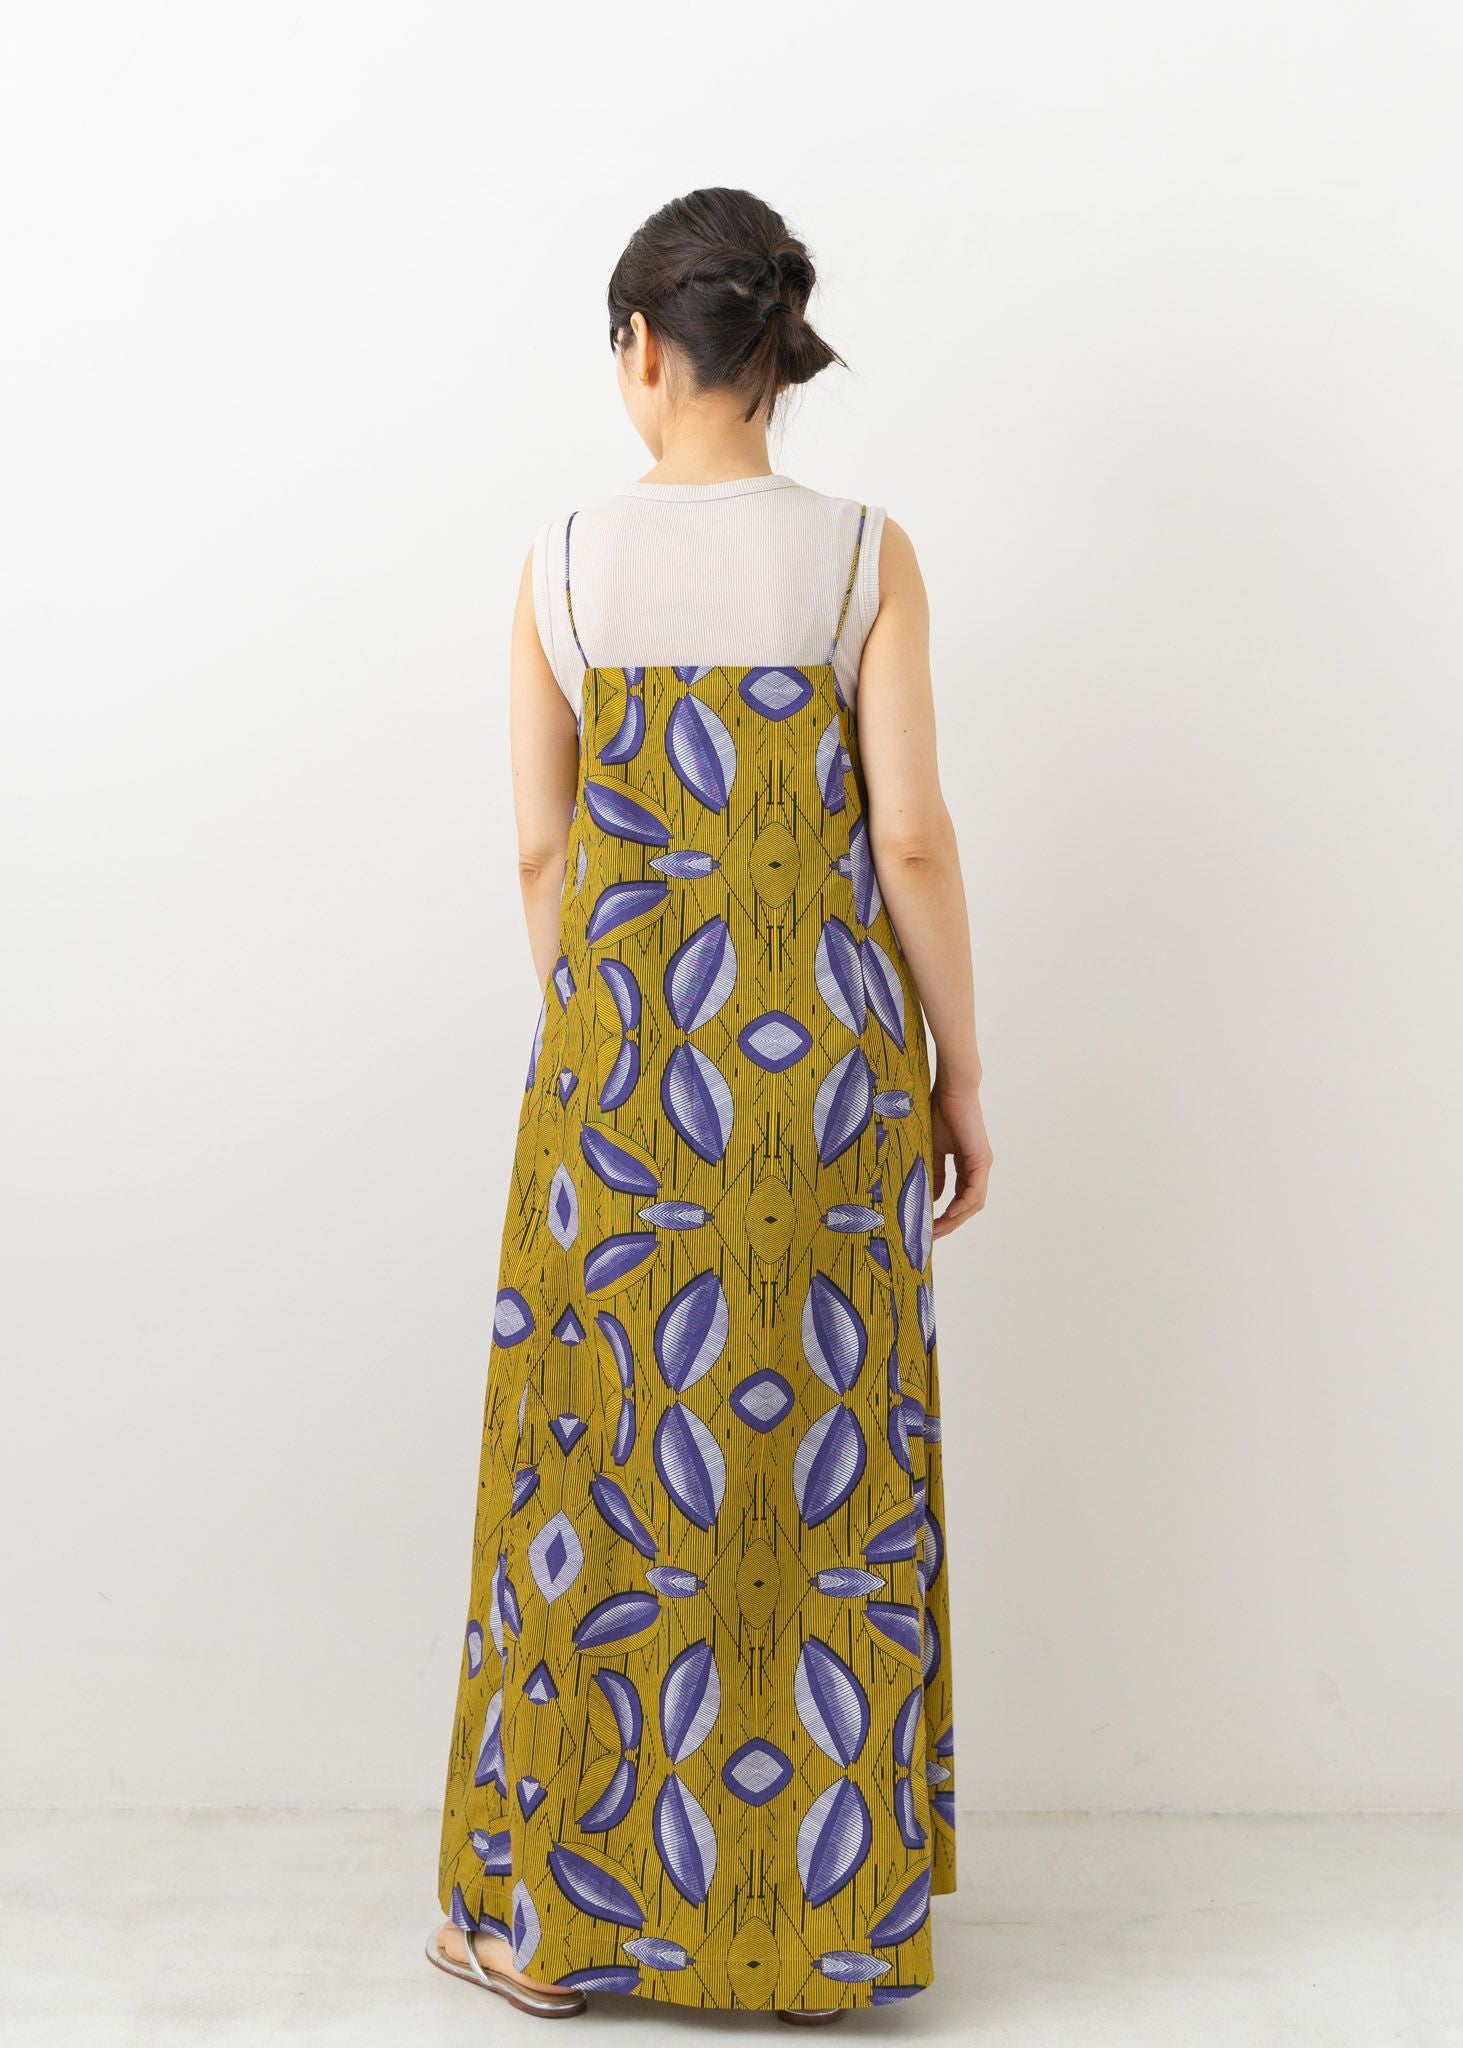 Cotton African Print Nosleeve Dress